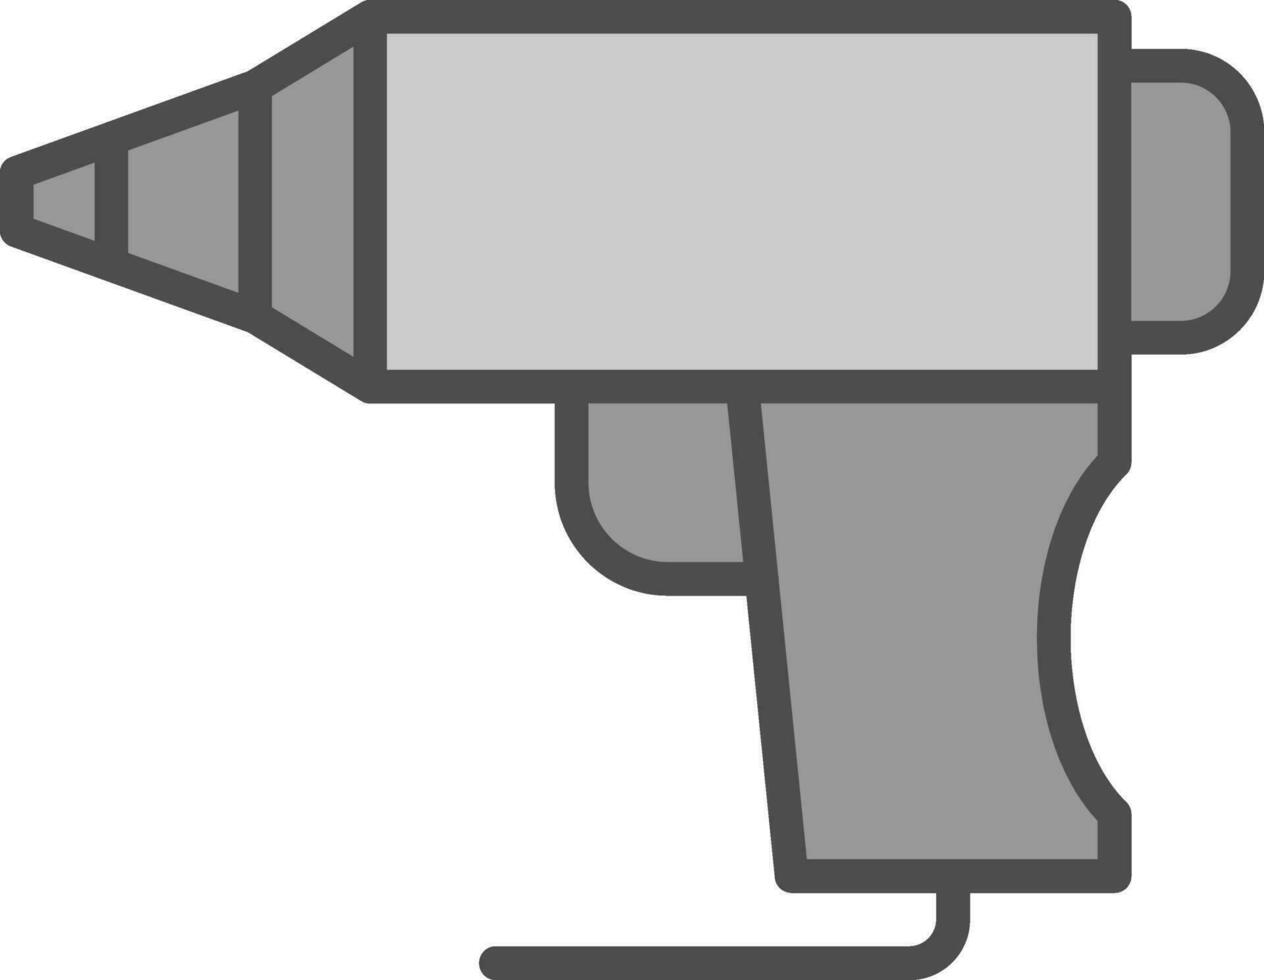 Hot Glue Gun Vector Icon Design